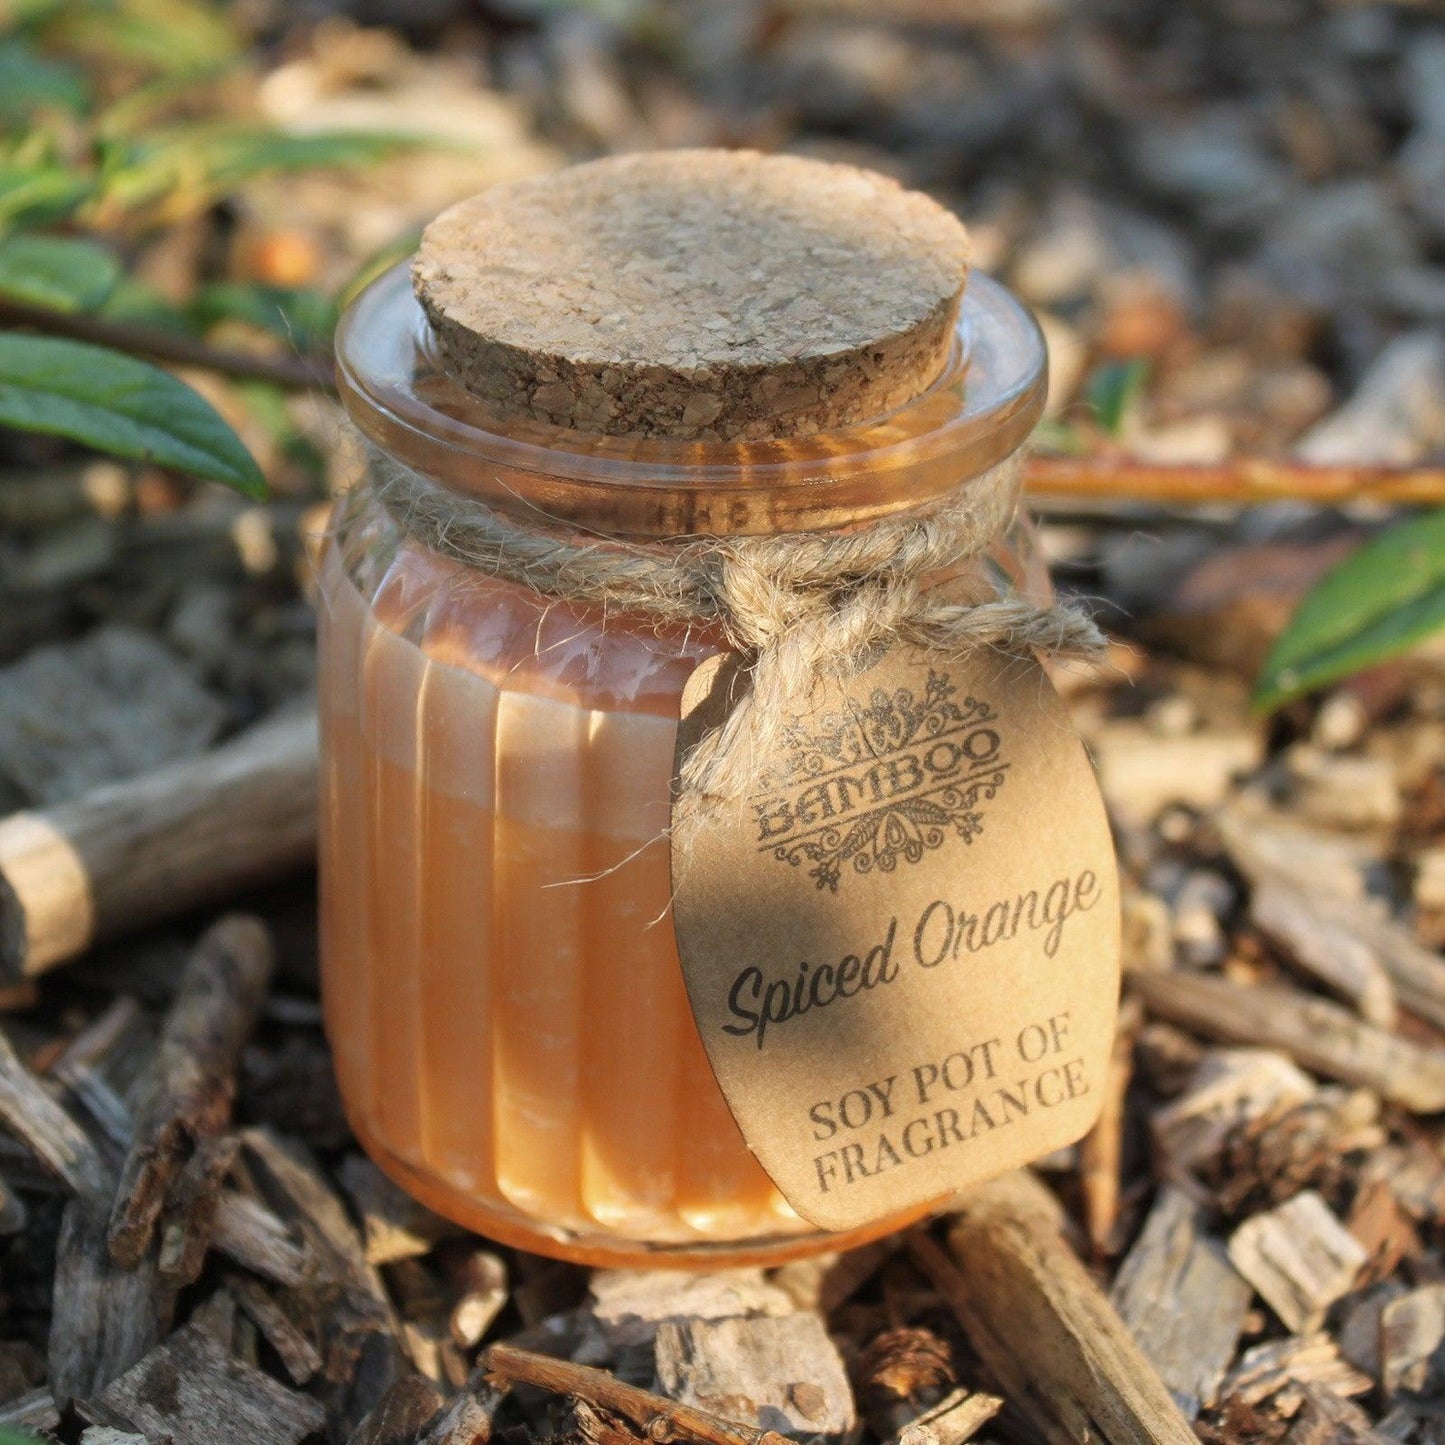 Spiced Orange Soy Pot of Fragrance Candles - DuvetDay.co.uk